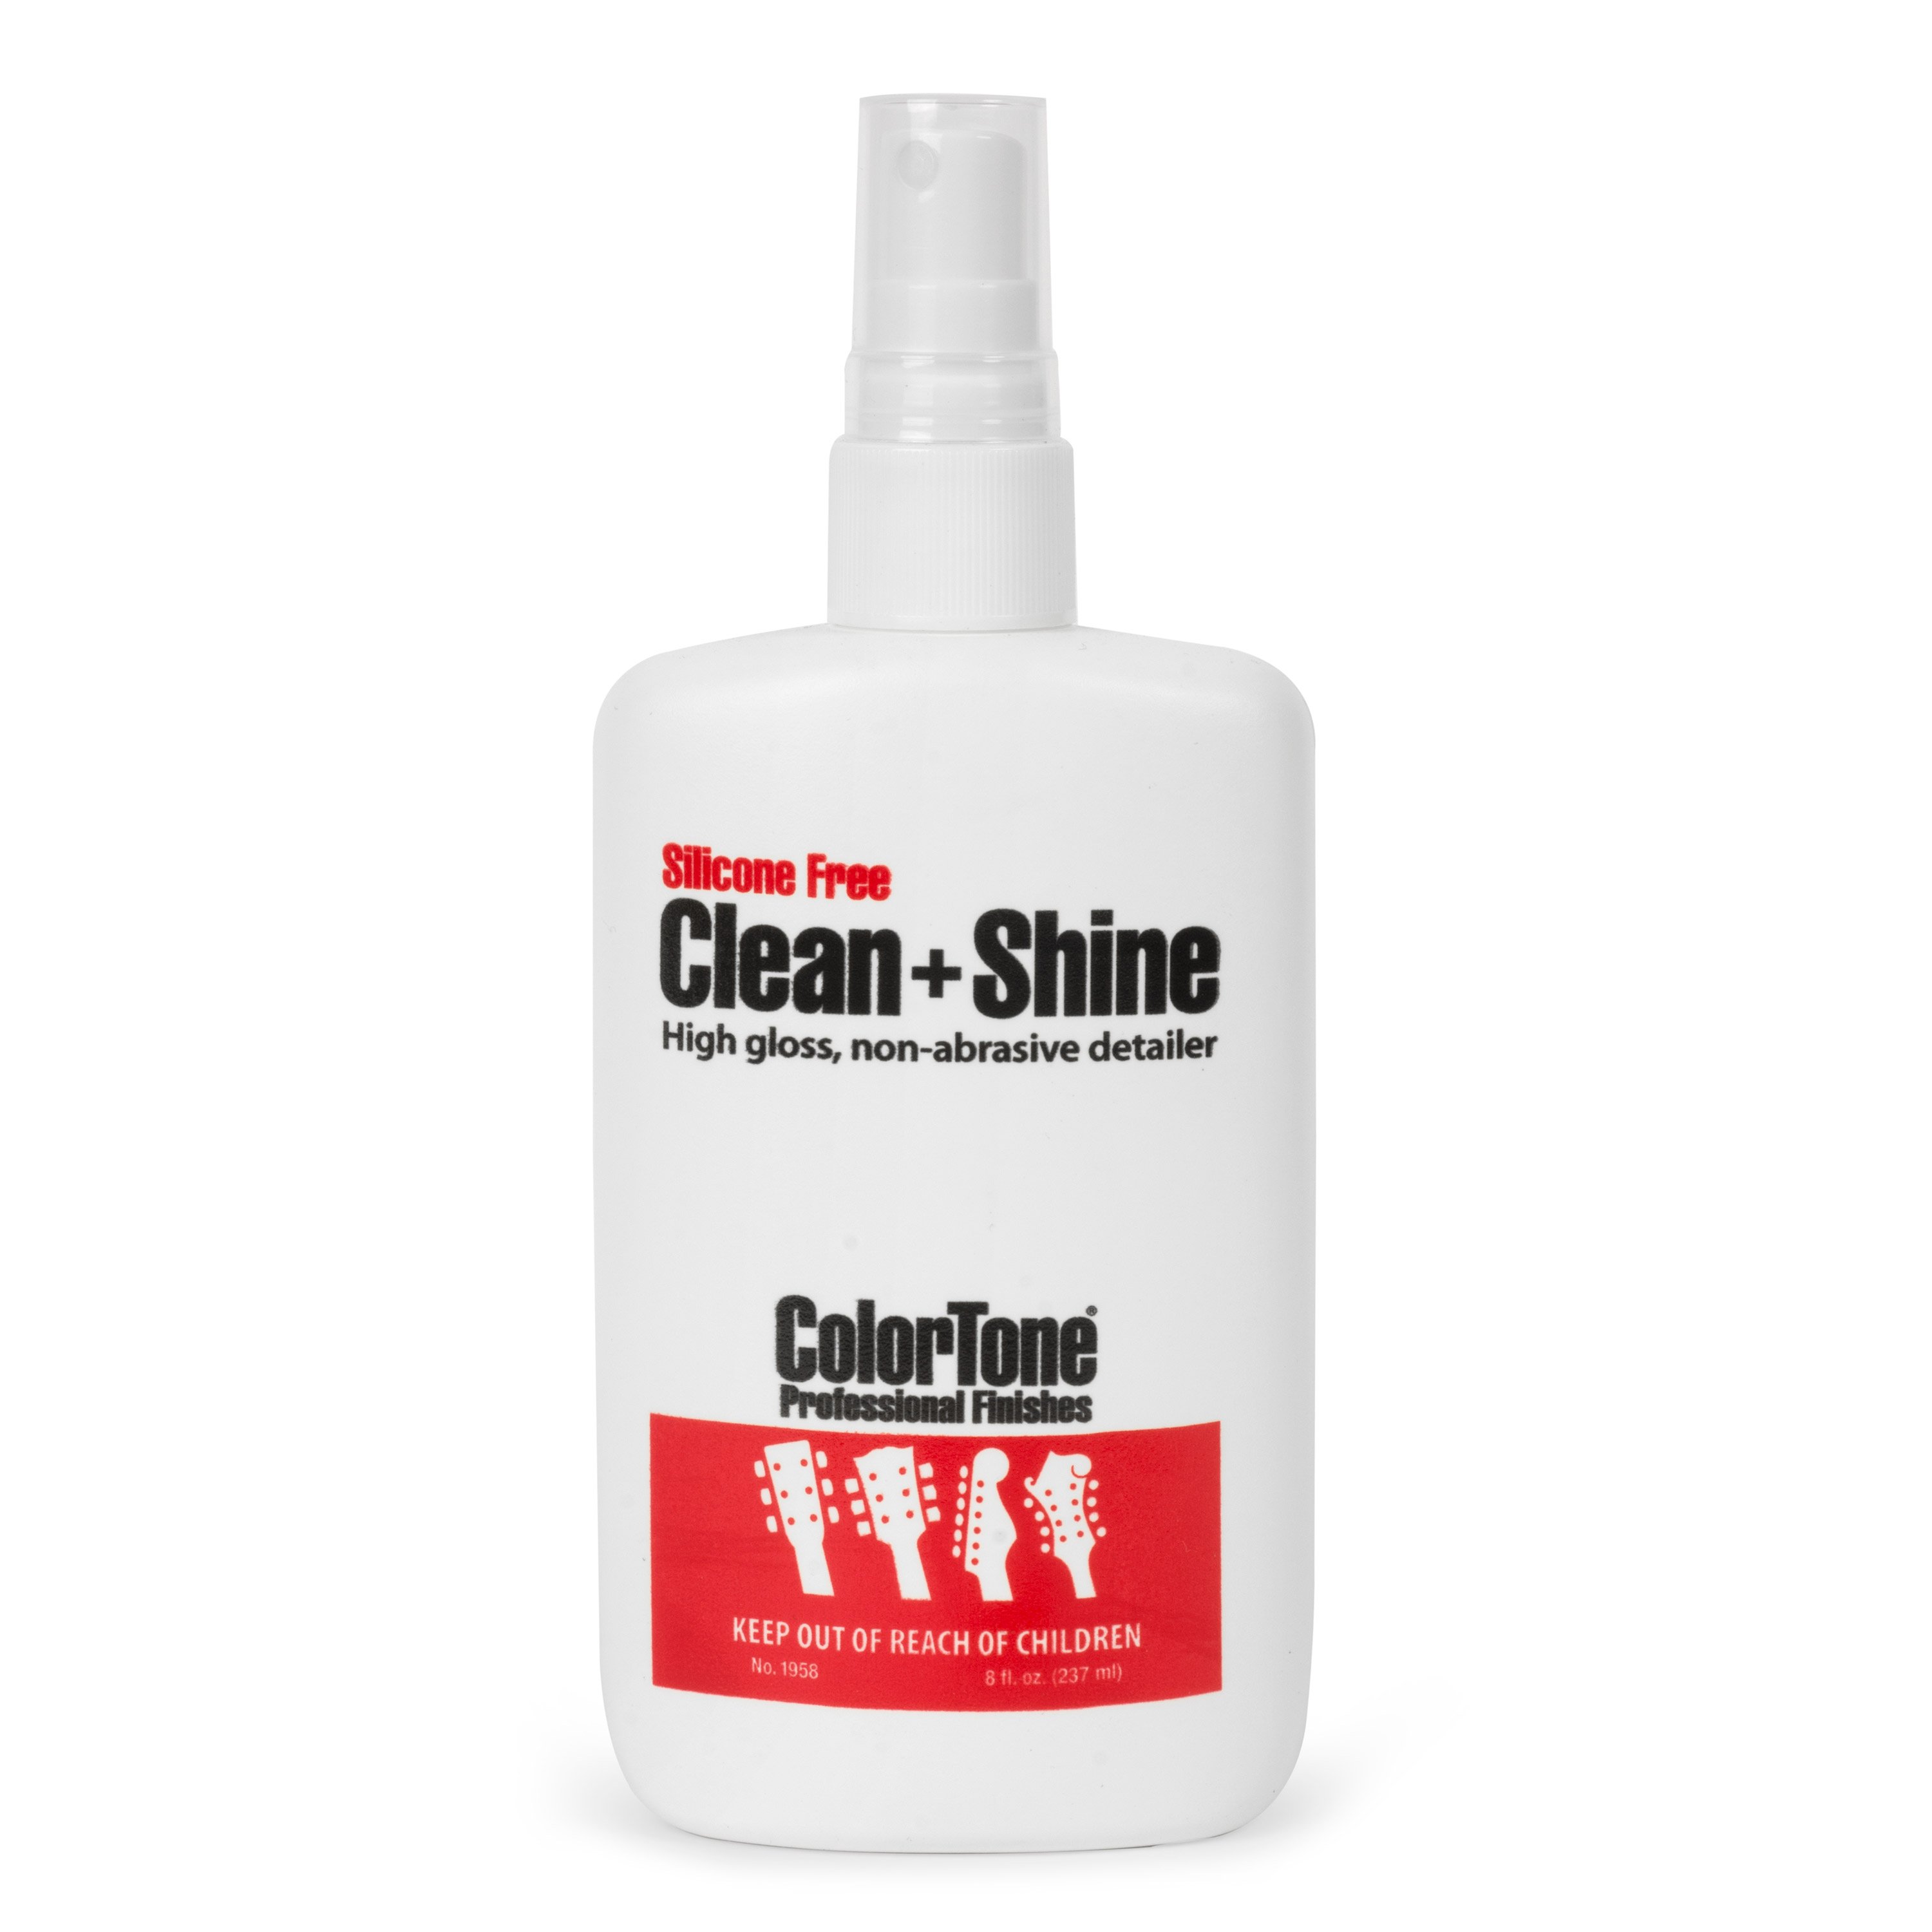 ColorTone Clean + Shine Polish